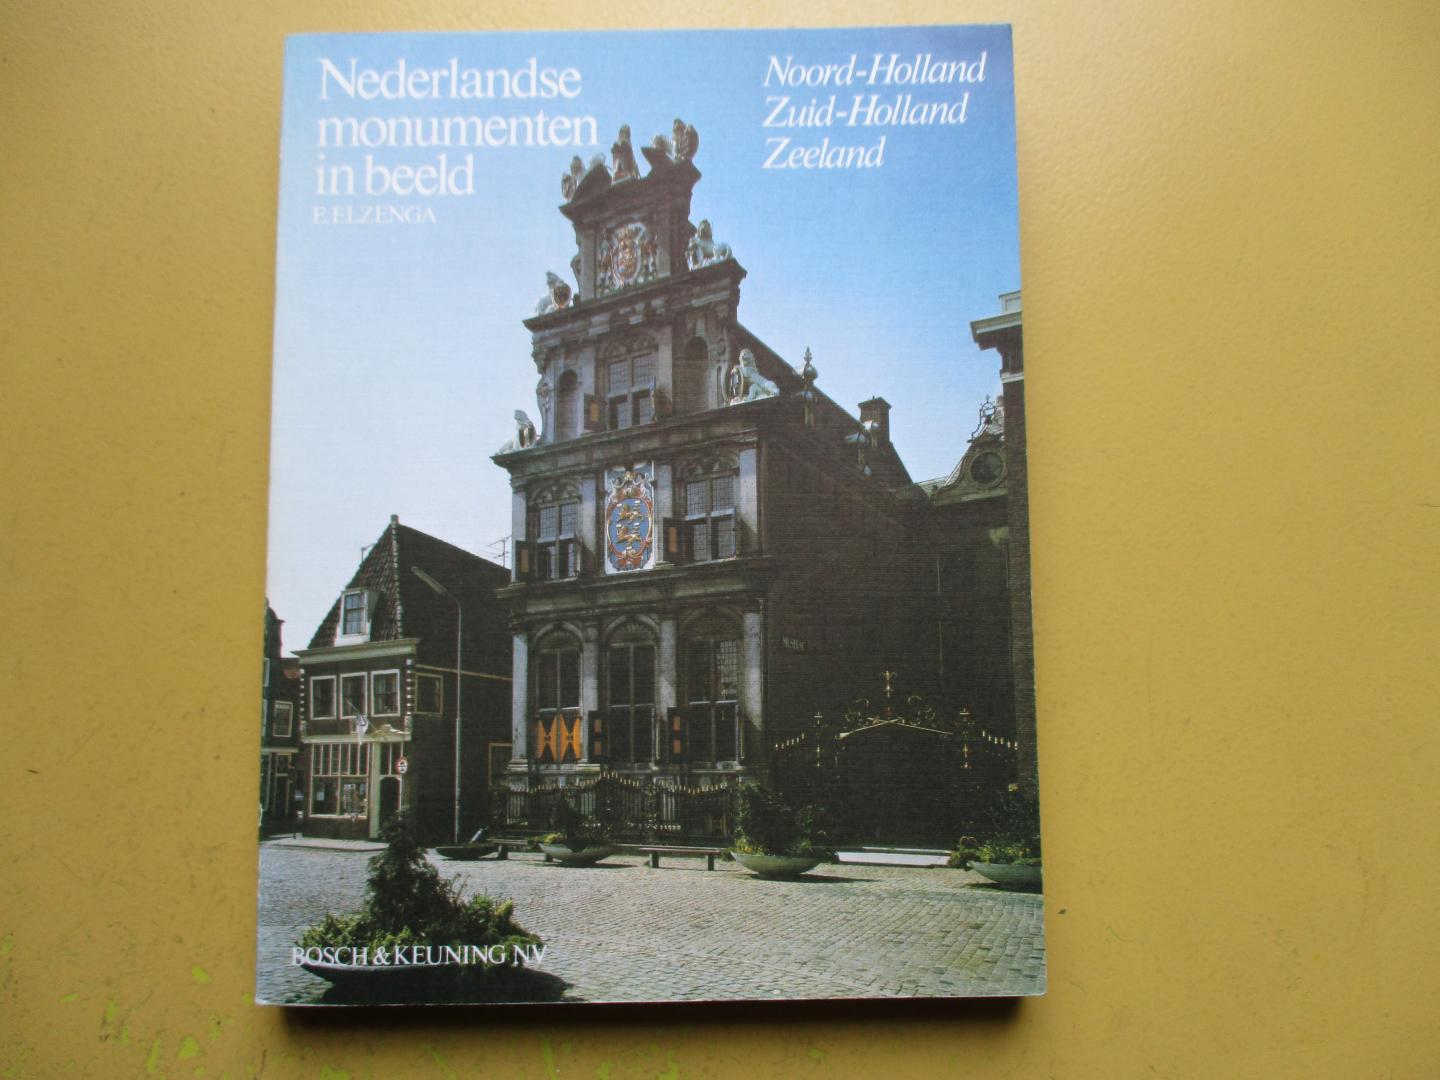 Elzenga. E. - Nederlandse monumenten in beeld Noord-Holland/Zuid-Holland/Zeeland